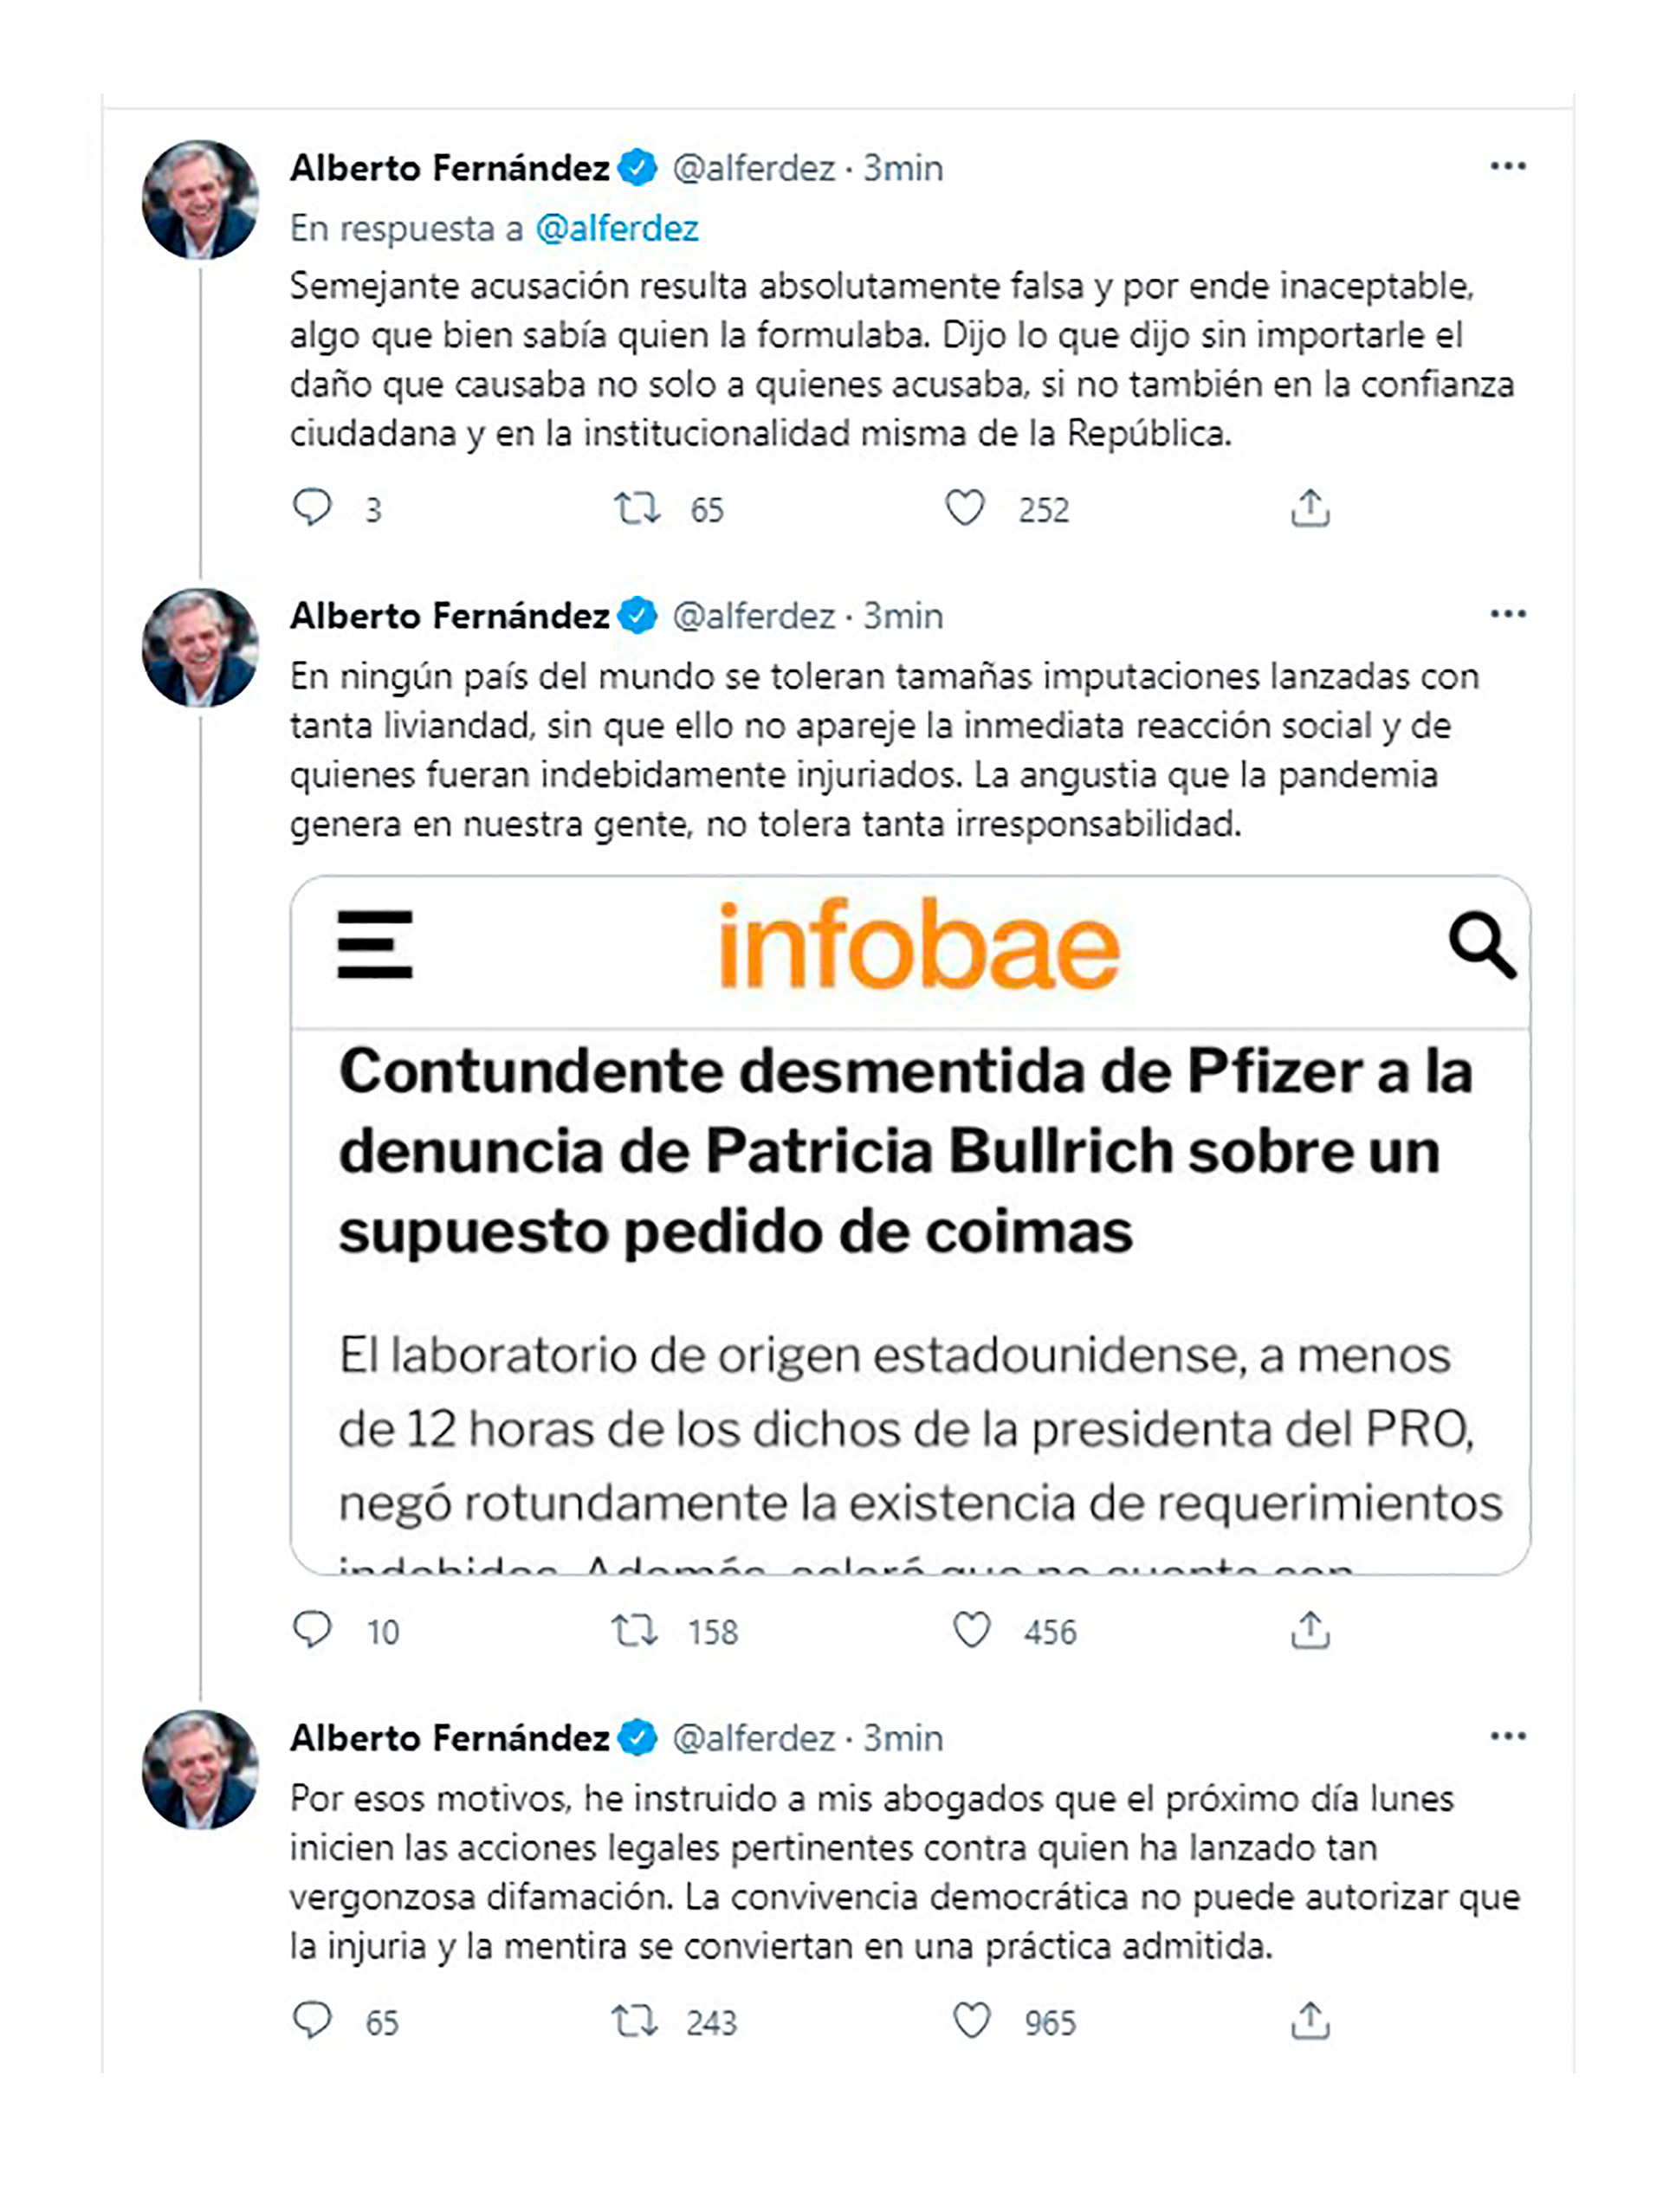 Los mensajes de Alberto Fernández sobre los dichos de Patricia Bullrich (Twitter)